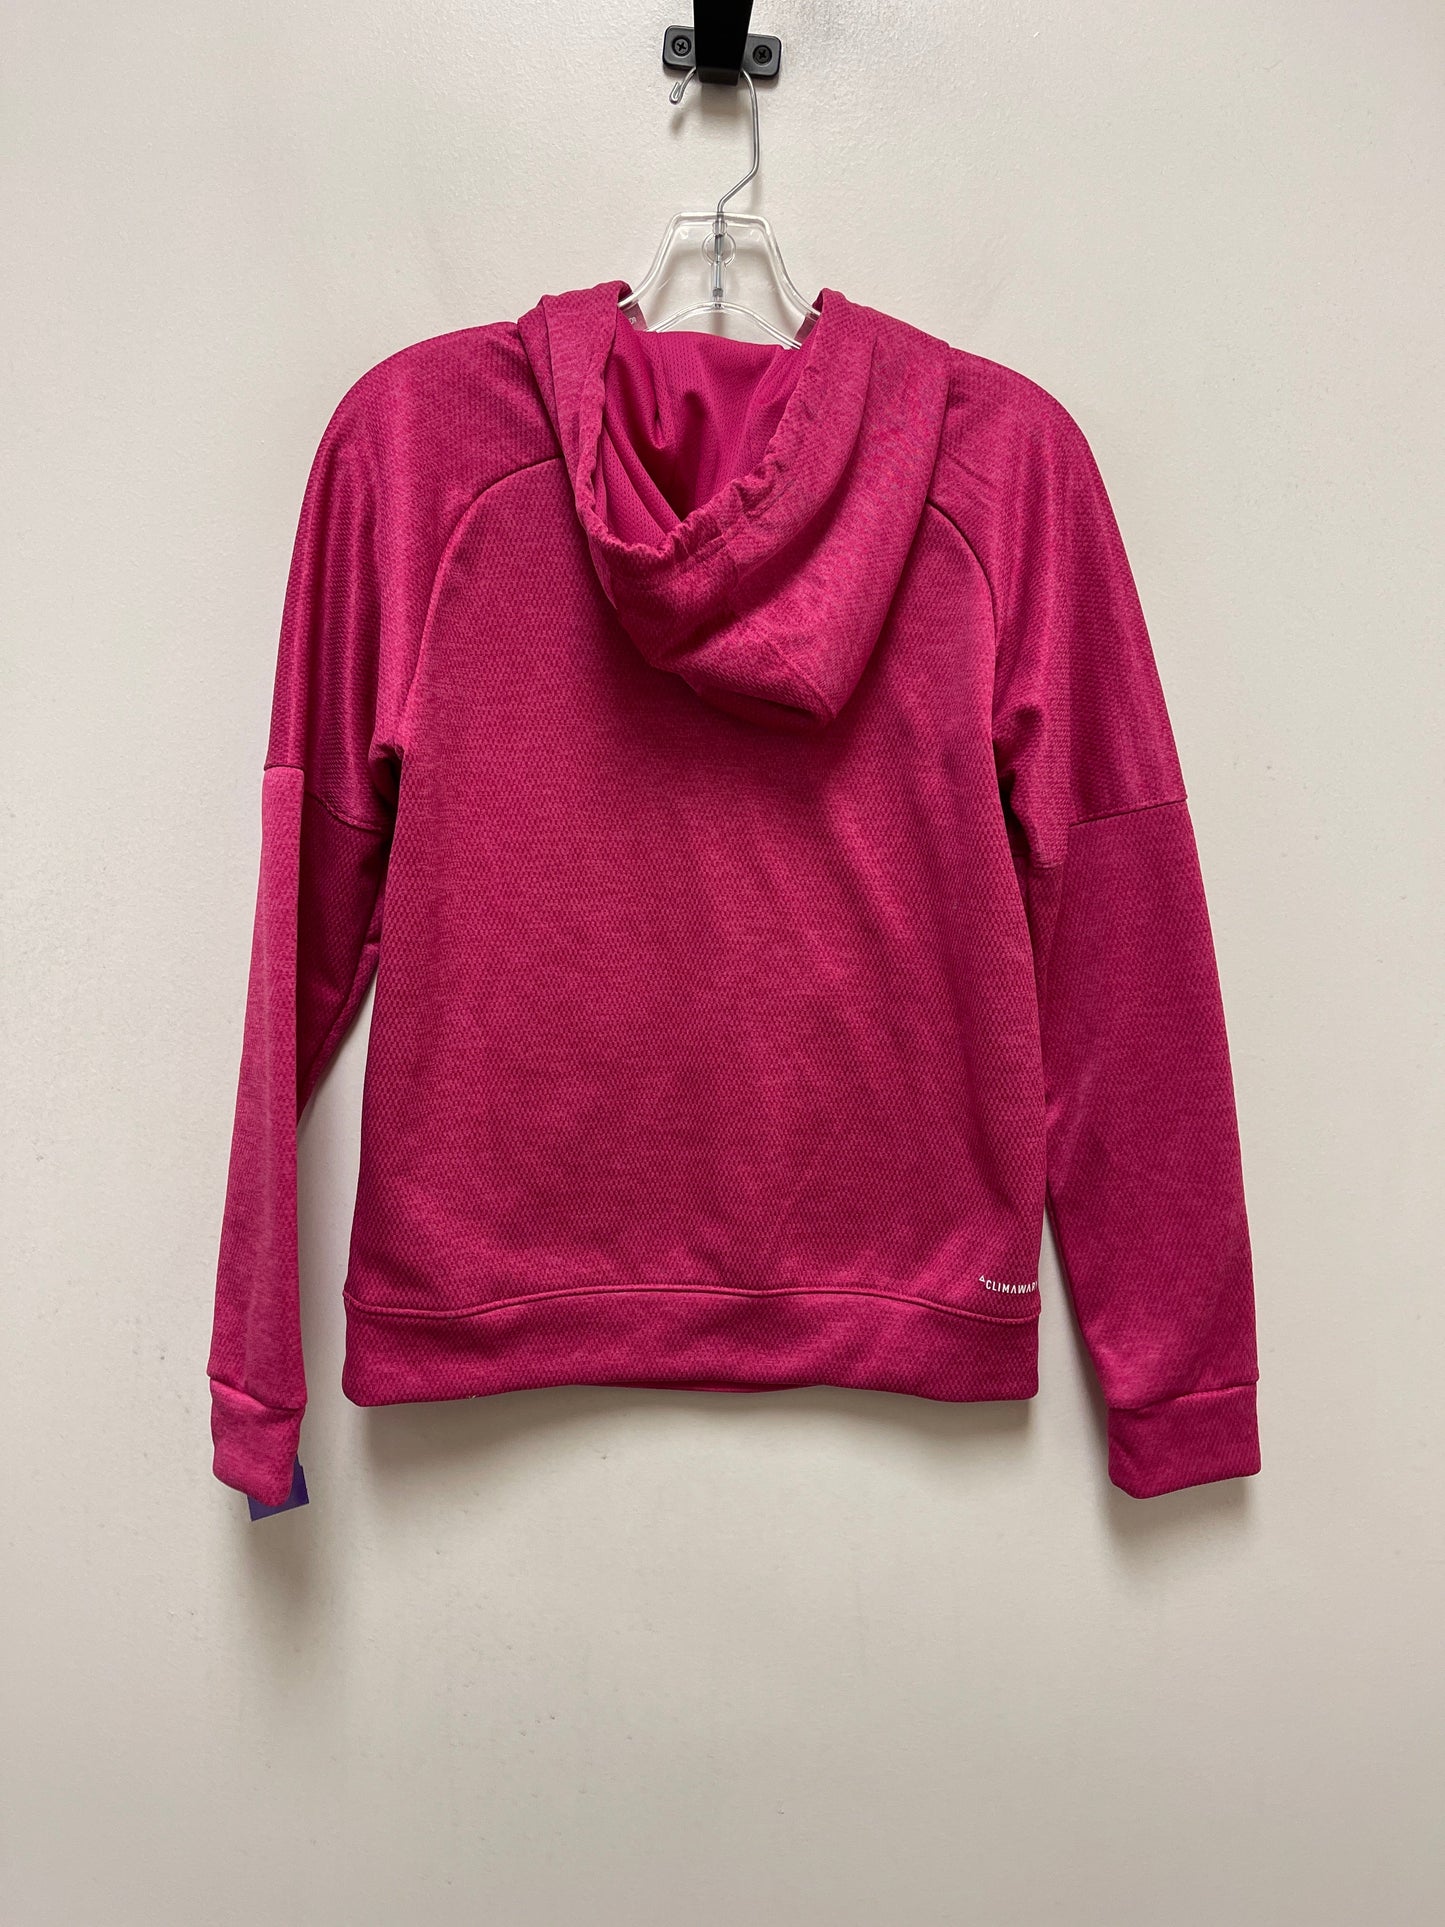 Pink Athletic Sweatshirt Hoodie Adidas, Size S